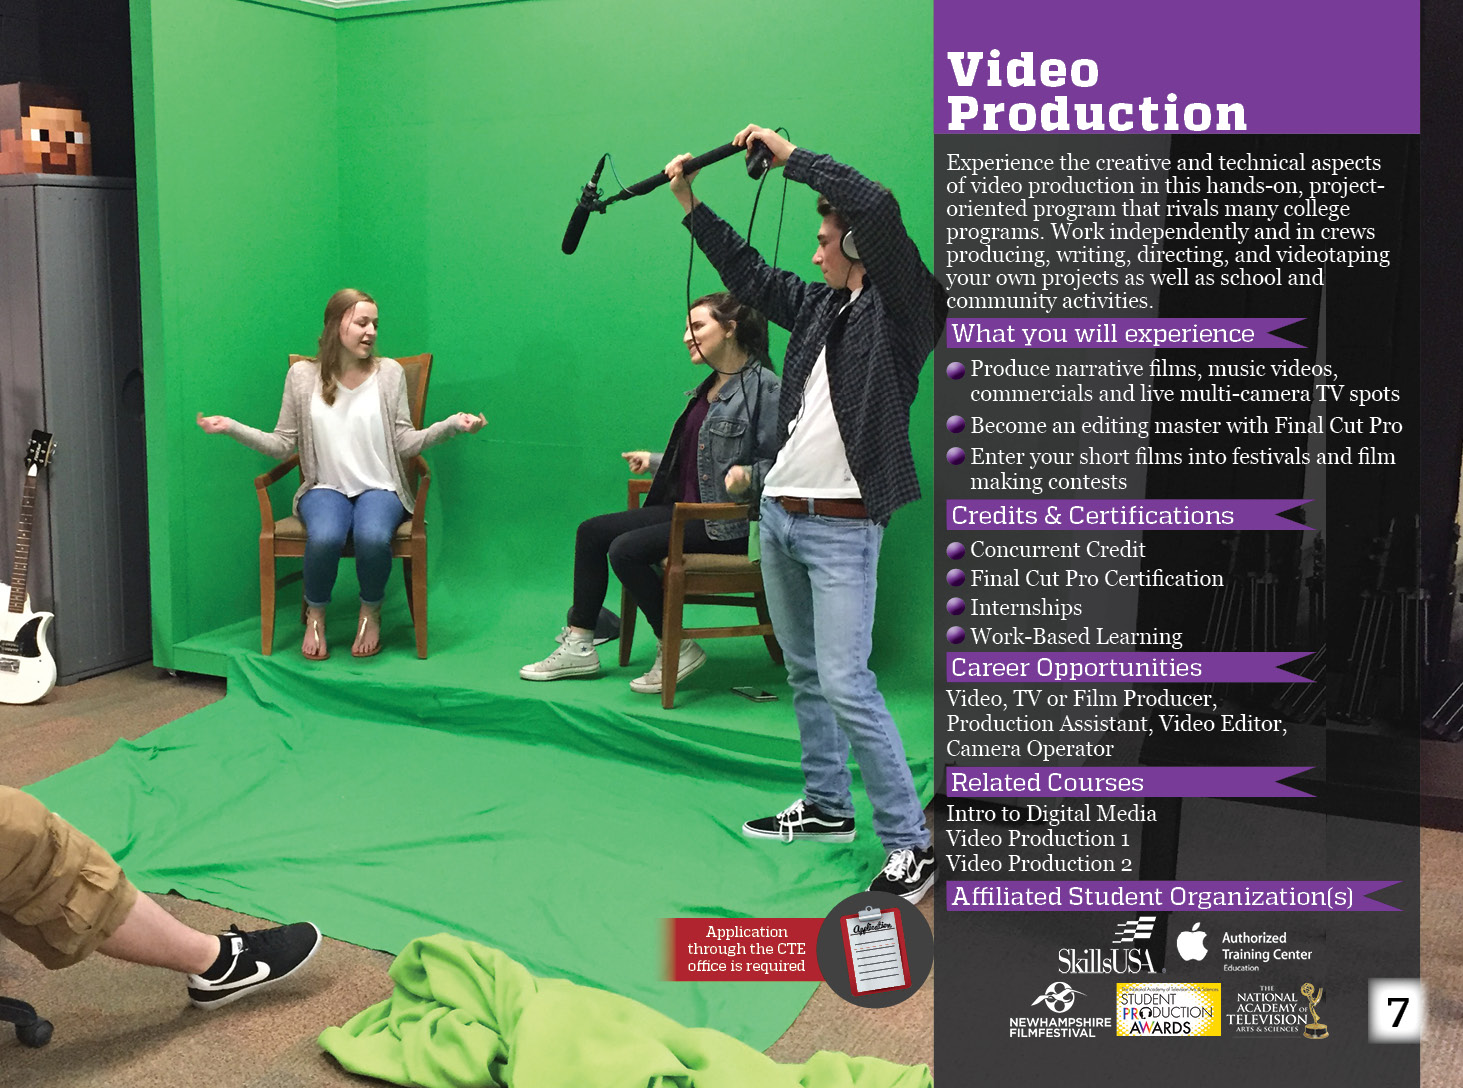 Video Production program details